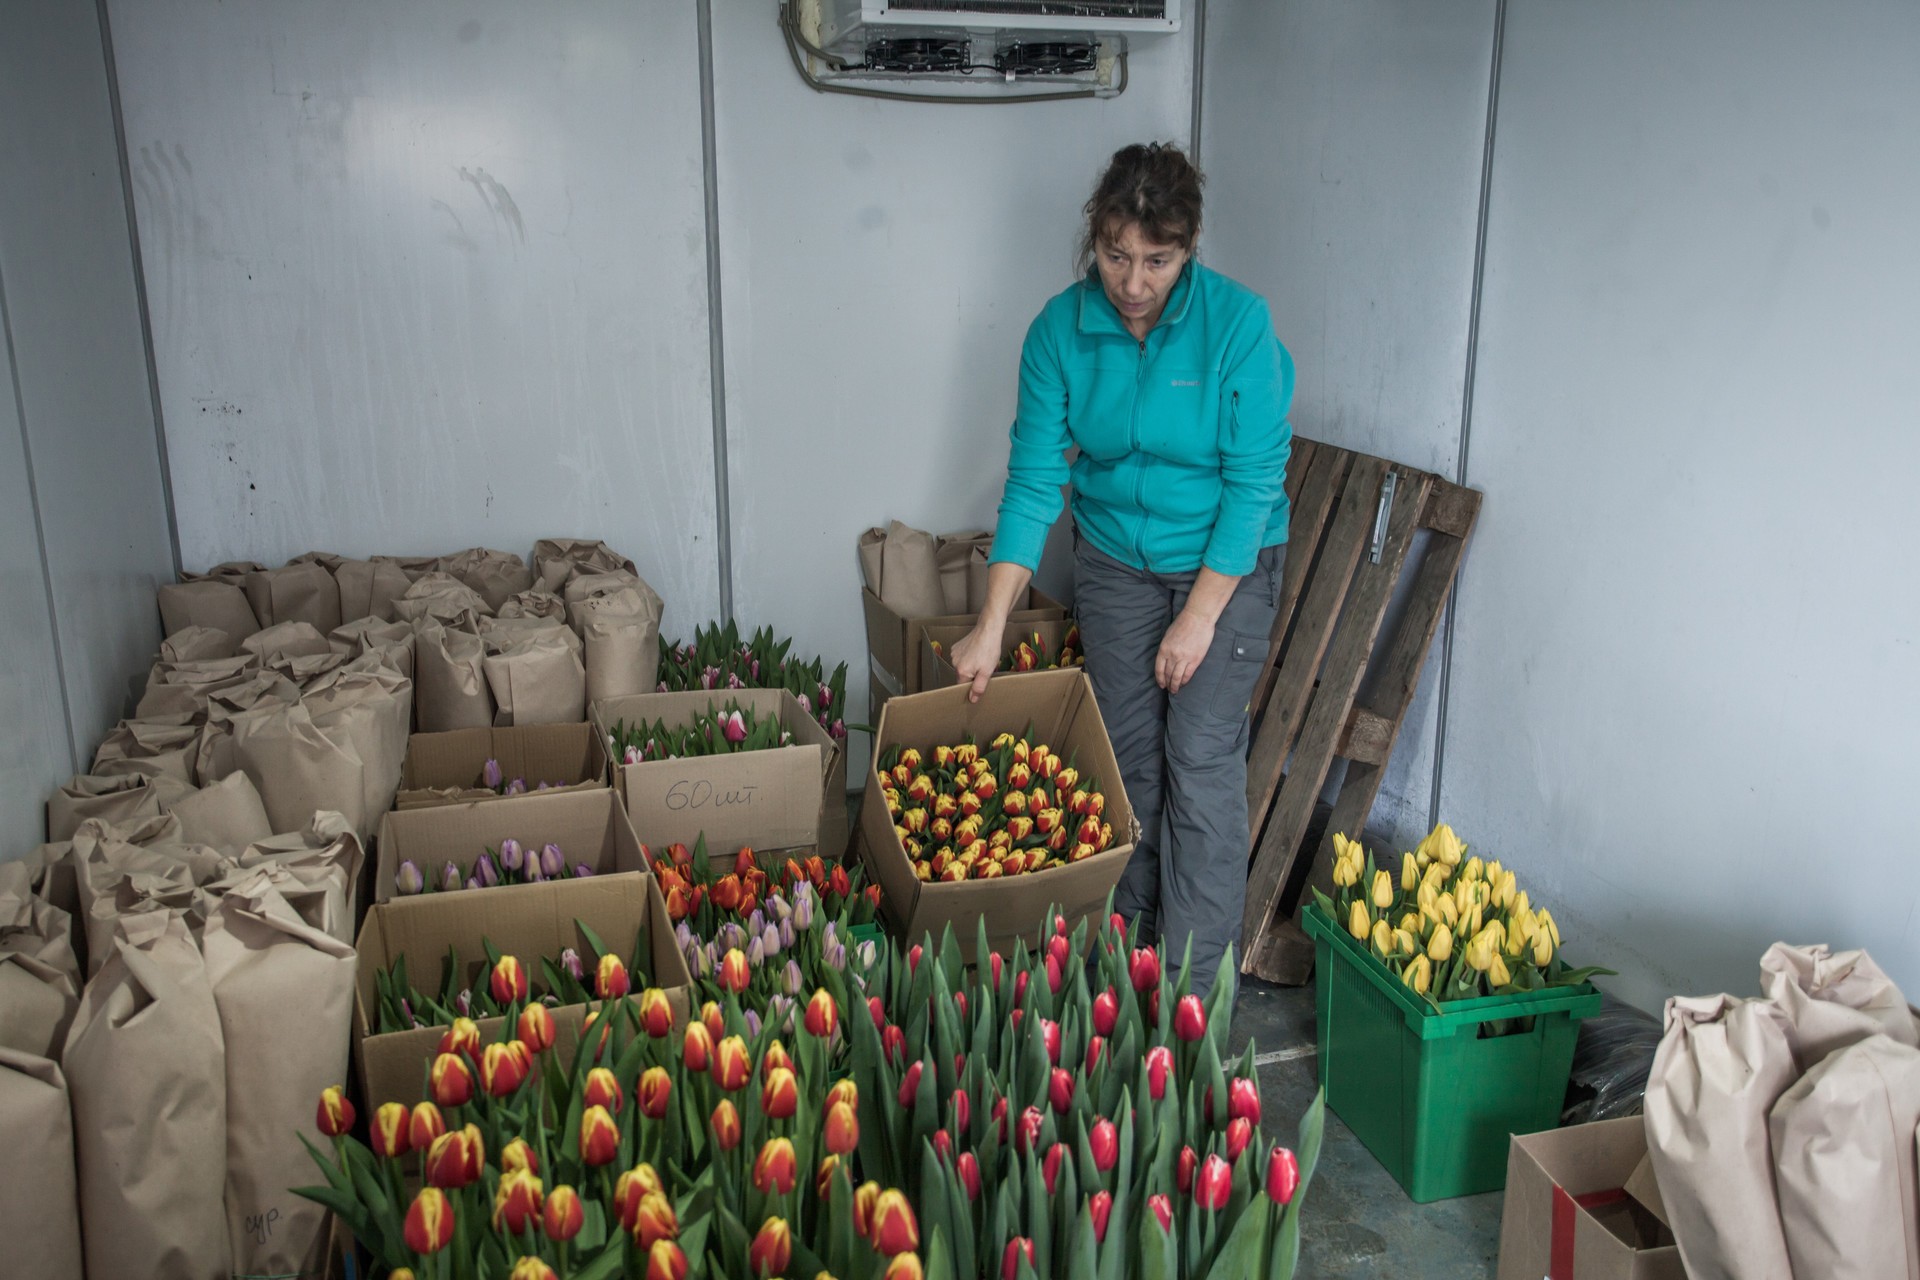 Выращивание тюльпанов в домашних условиях на продажу